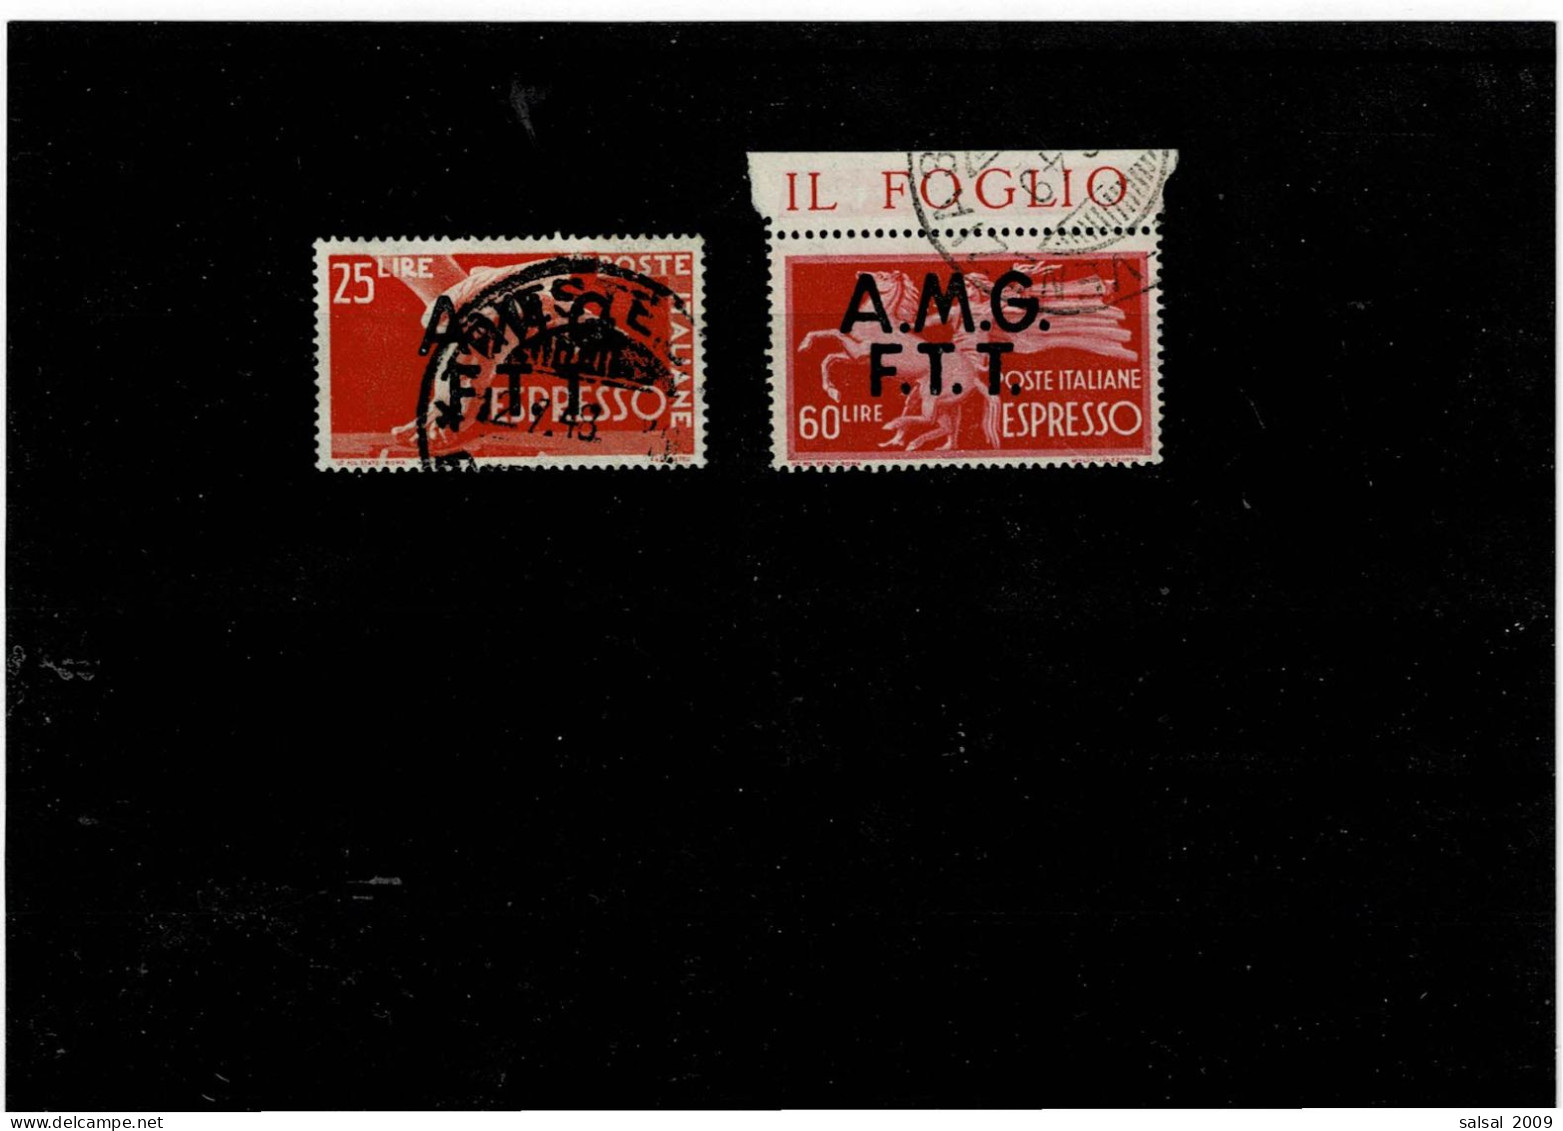 TRIESTE ,Zona A ,"Democratica" ,25L.arancio + 60L. Rosso Carminio ,usati ,qualita Ottima - Express Mail